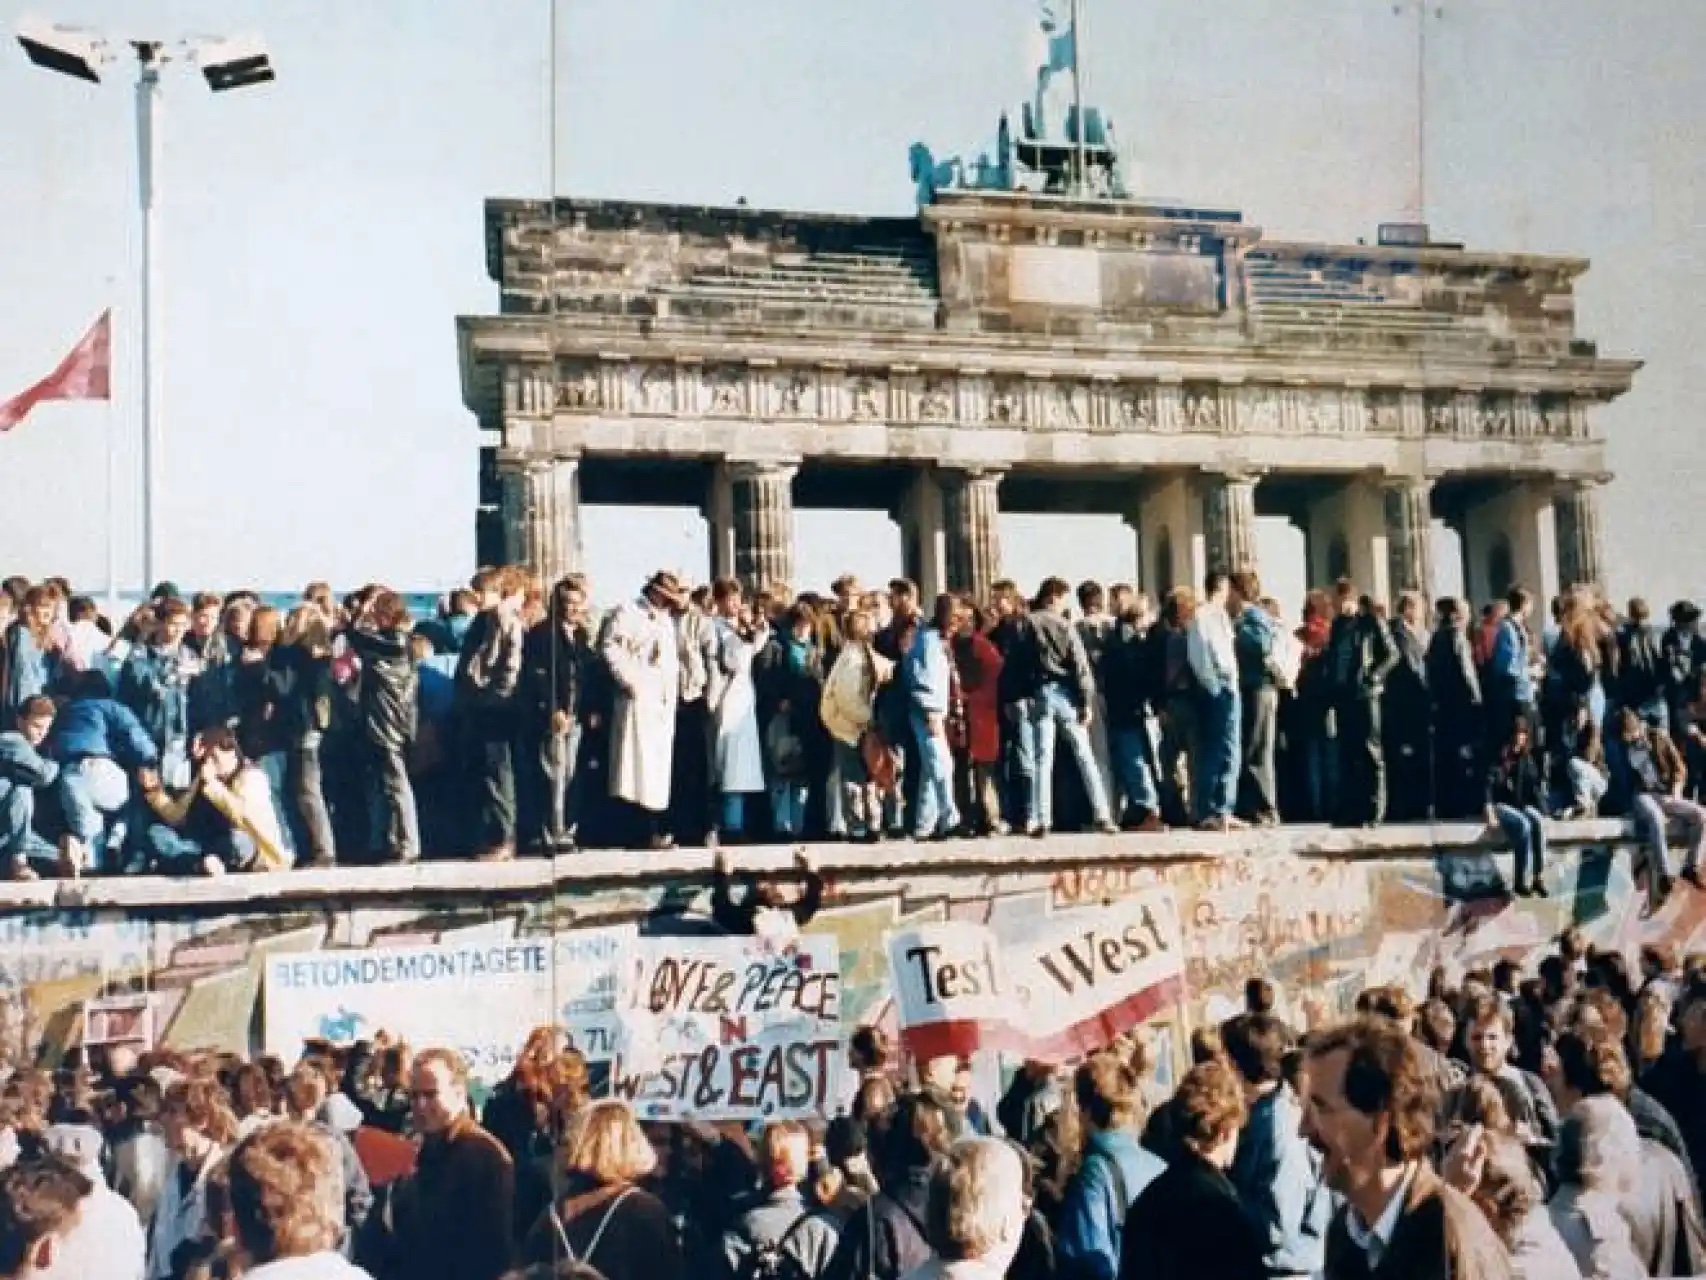 De Berlijnse muur valt